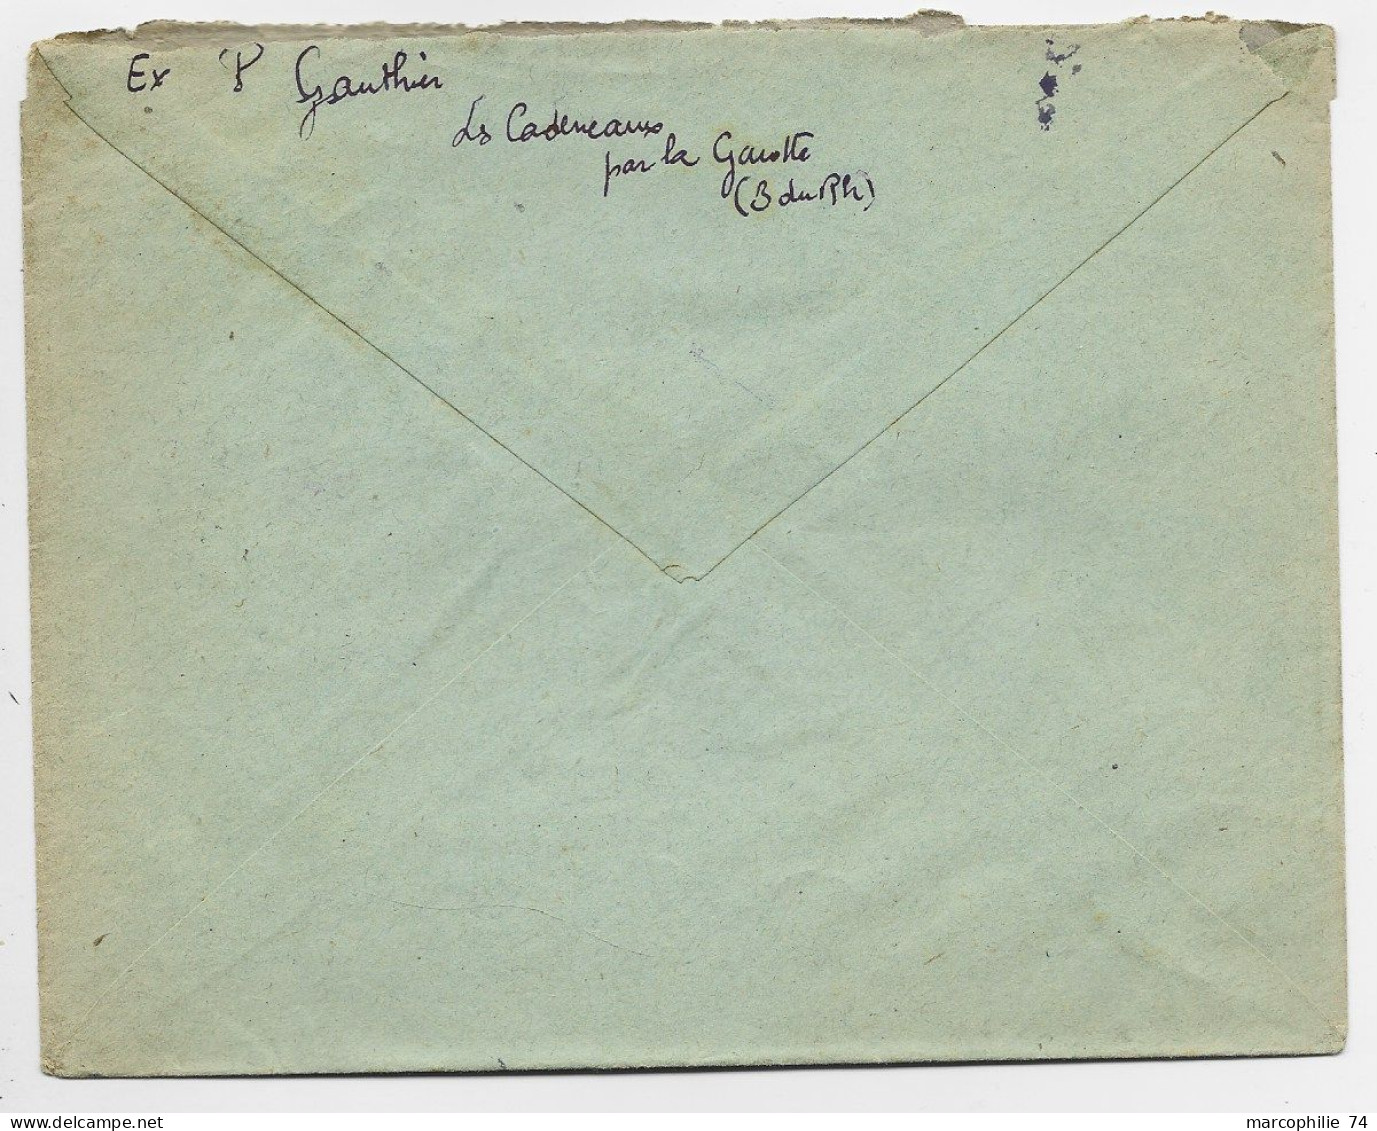 GANDON 5FR VERTX3 719 LETTRE REC PROVISOIRE C.PERLE LA GAVOTTE 5.4.1947 BCHES DU RHONE - 1945-54 Marianne De Gandon